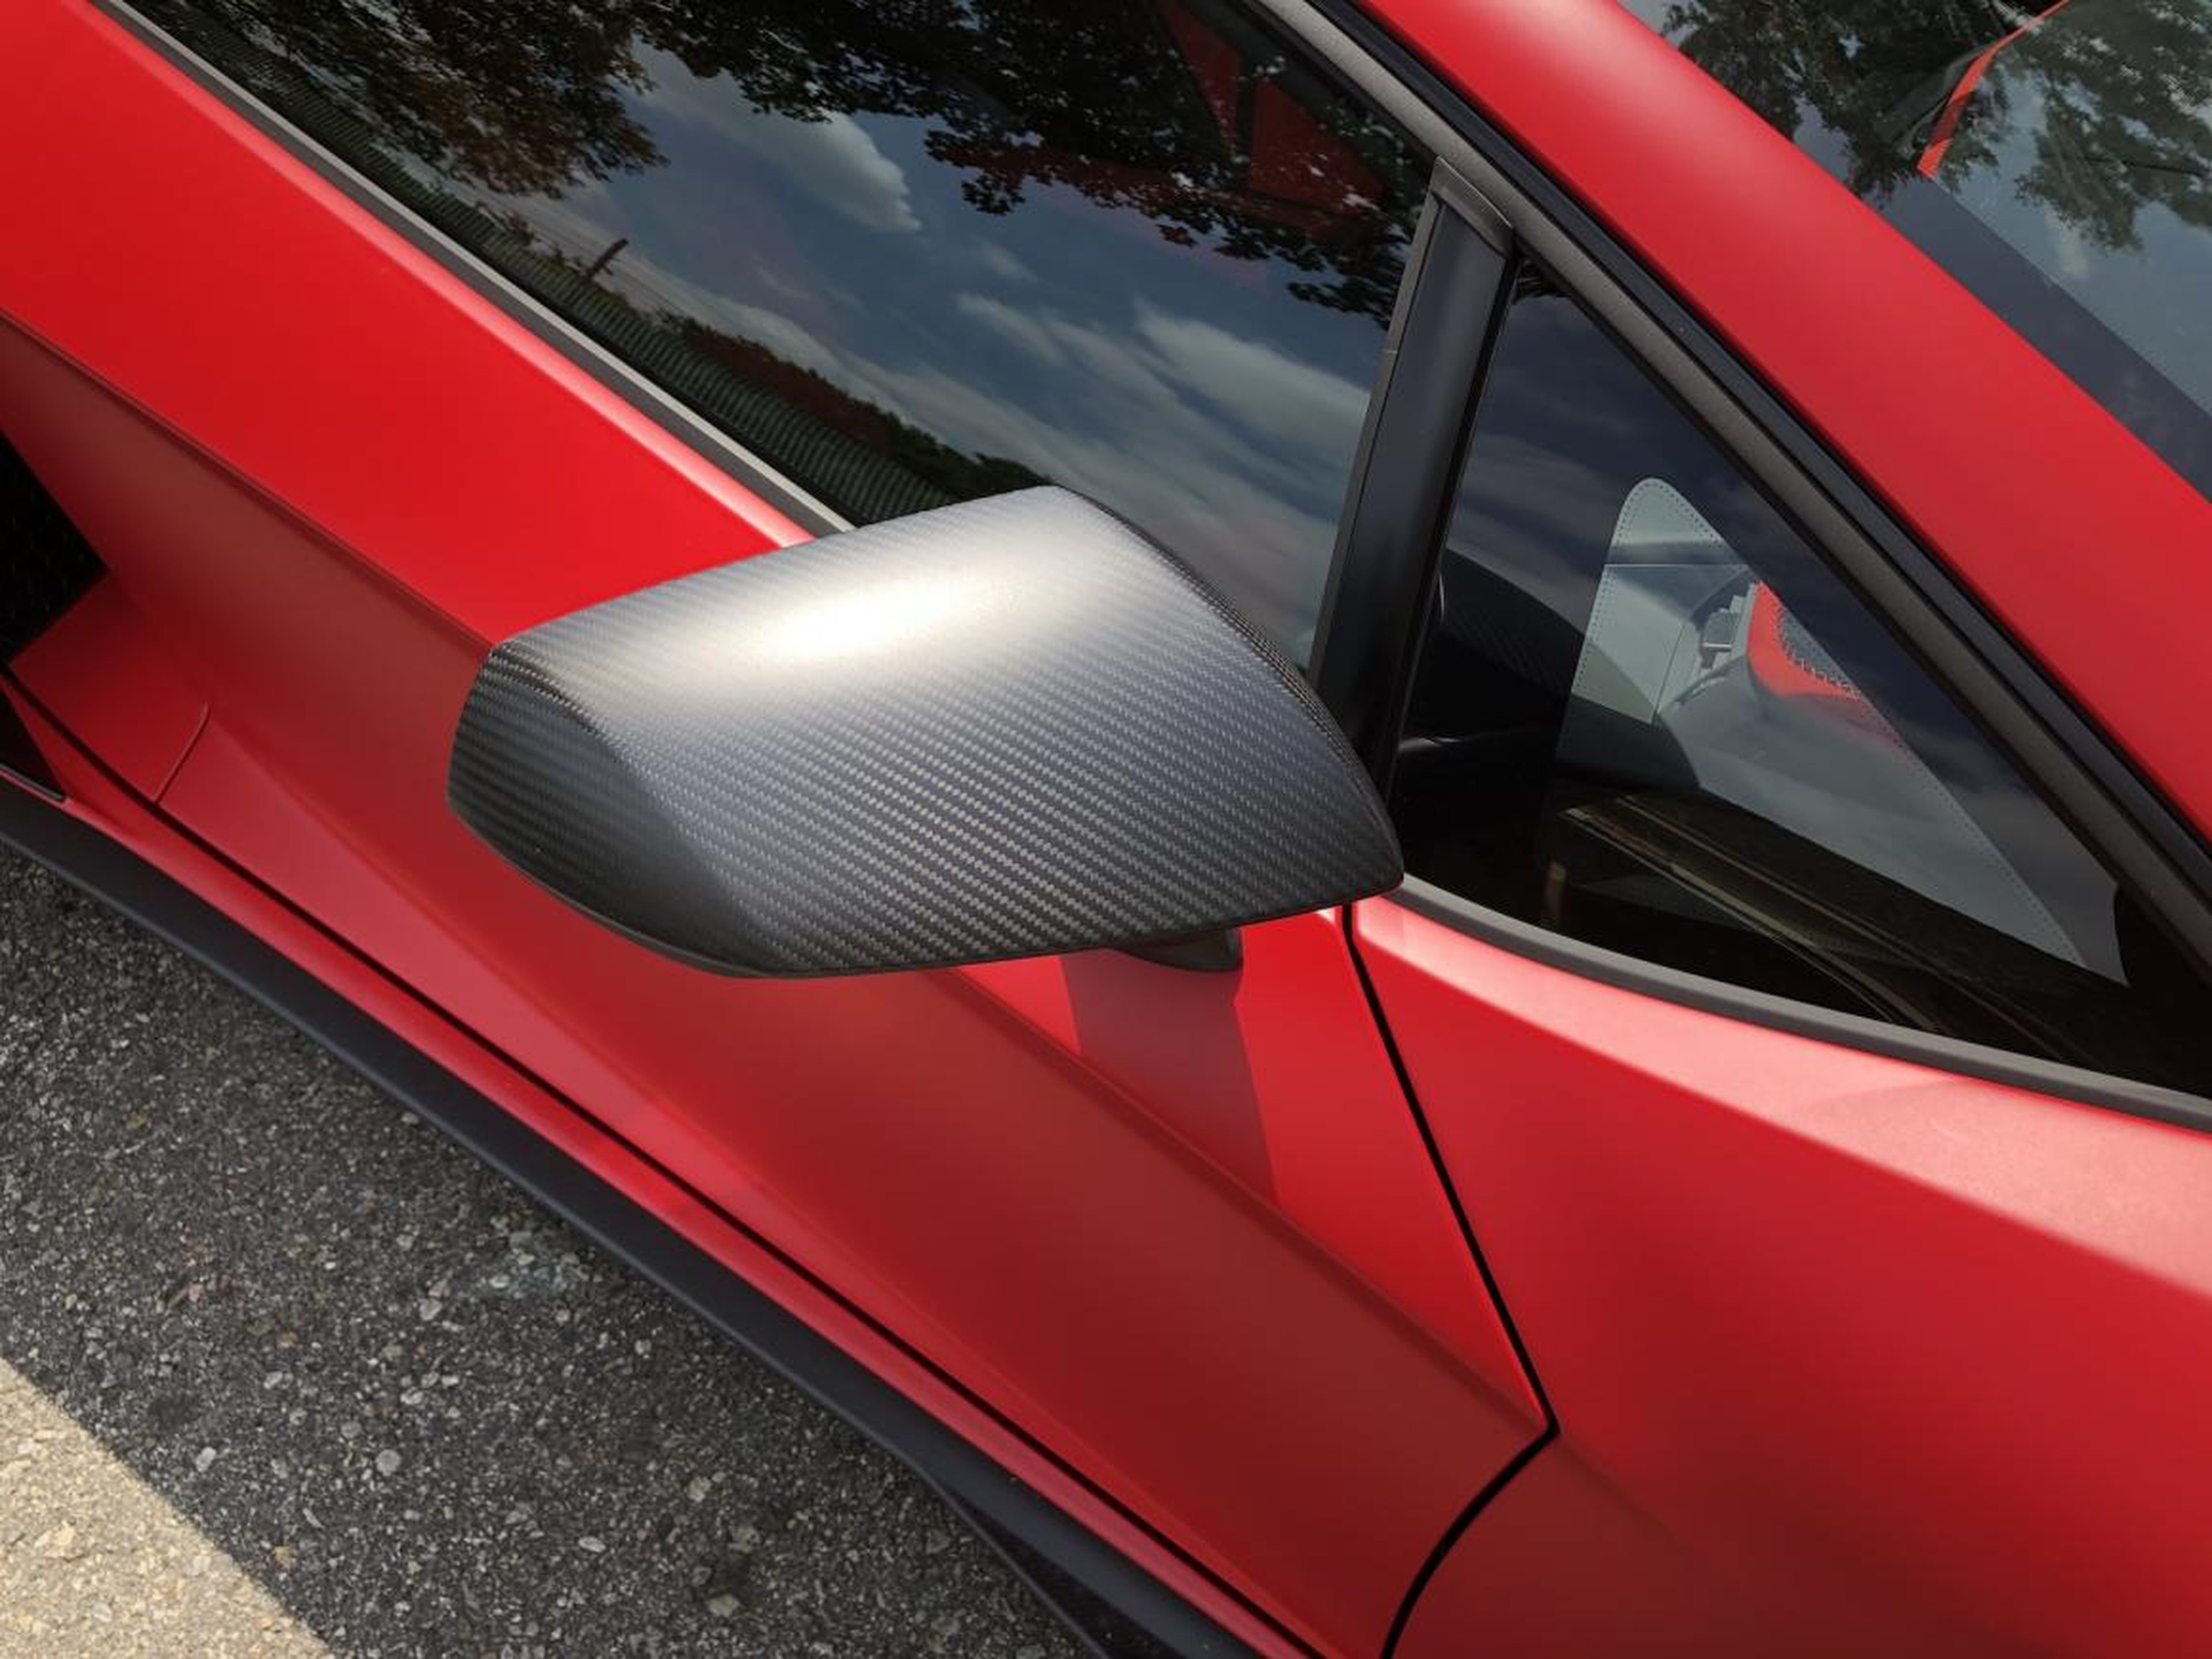 Un poco más de fibra de carbono no hace daño, ¿verdad? El Lamborghini Aventador SVJ lo tiene hasta en los espejos.